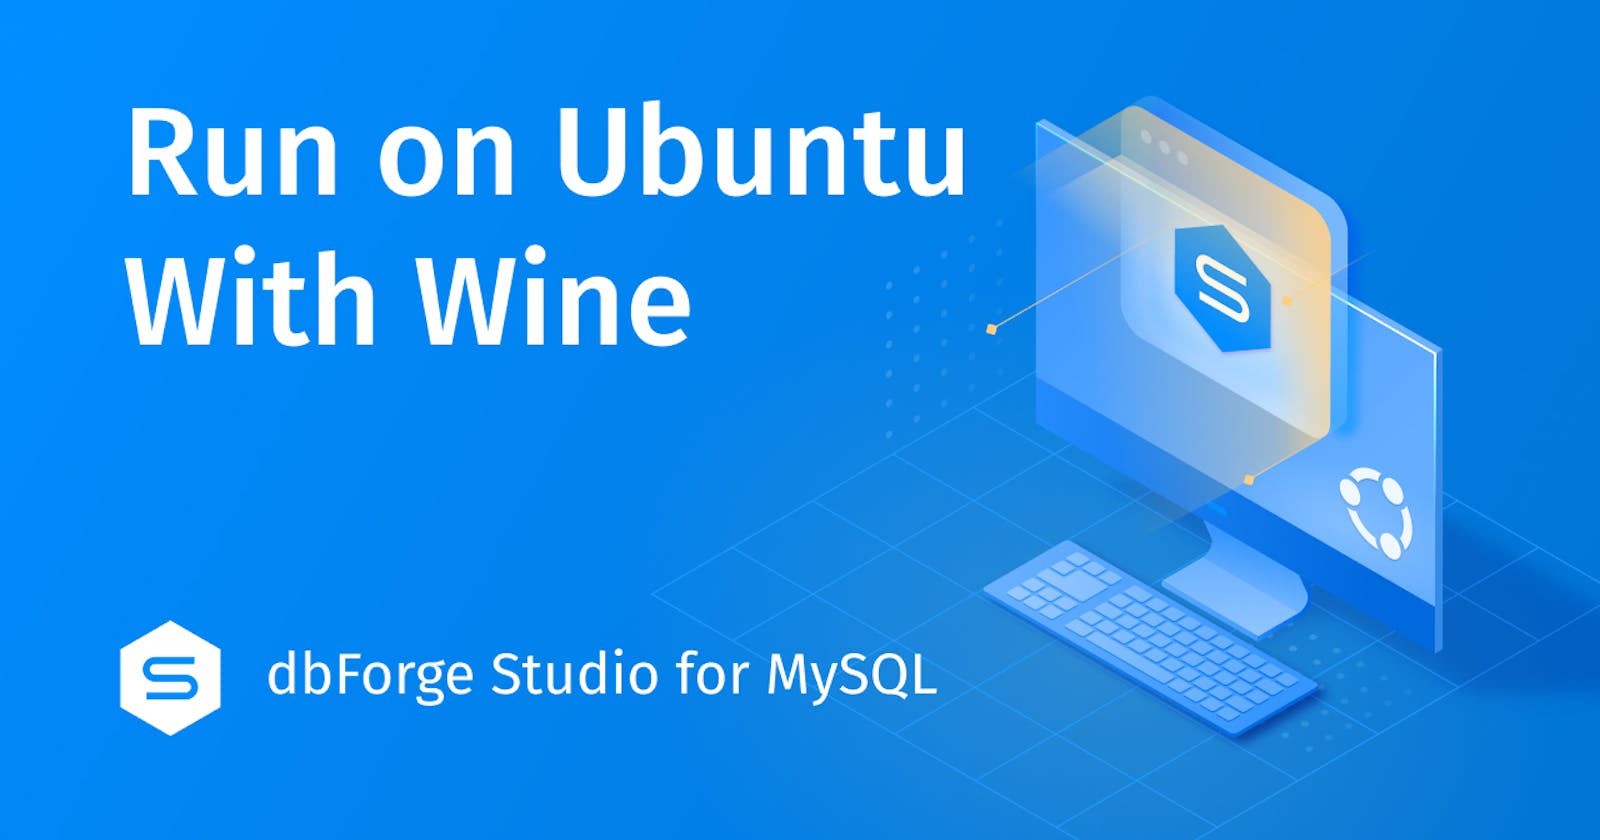 How to Install dbForge Studio for MySQL on Ubuntu Using Wine